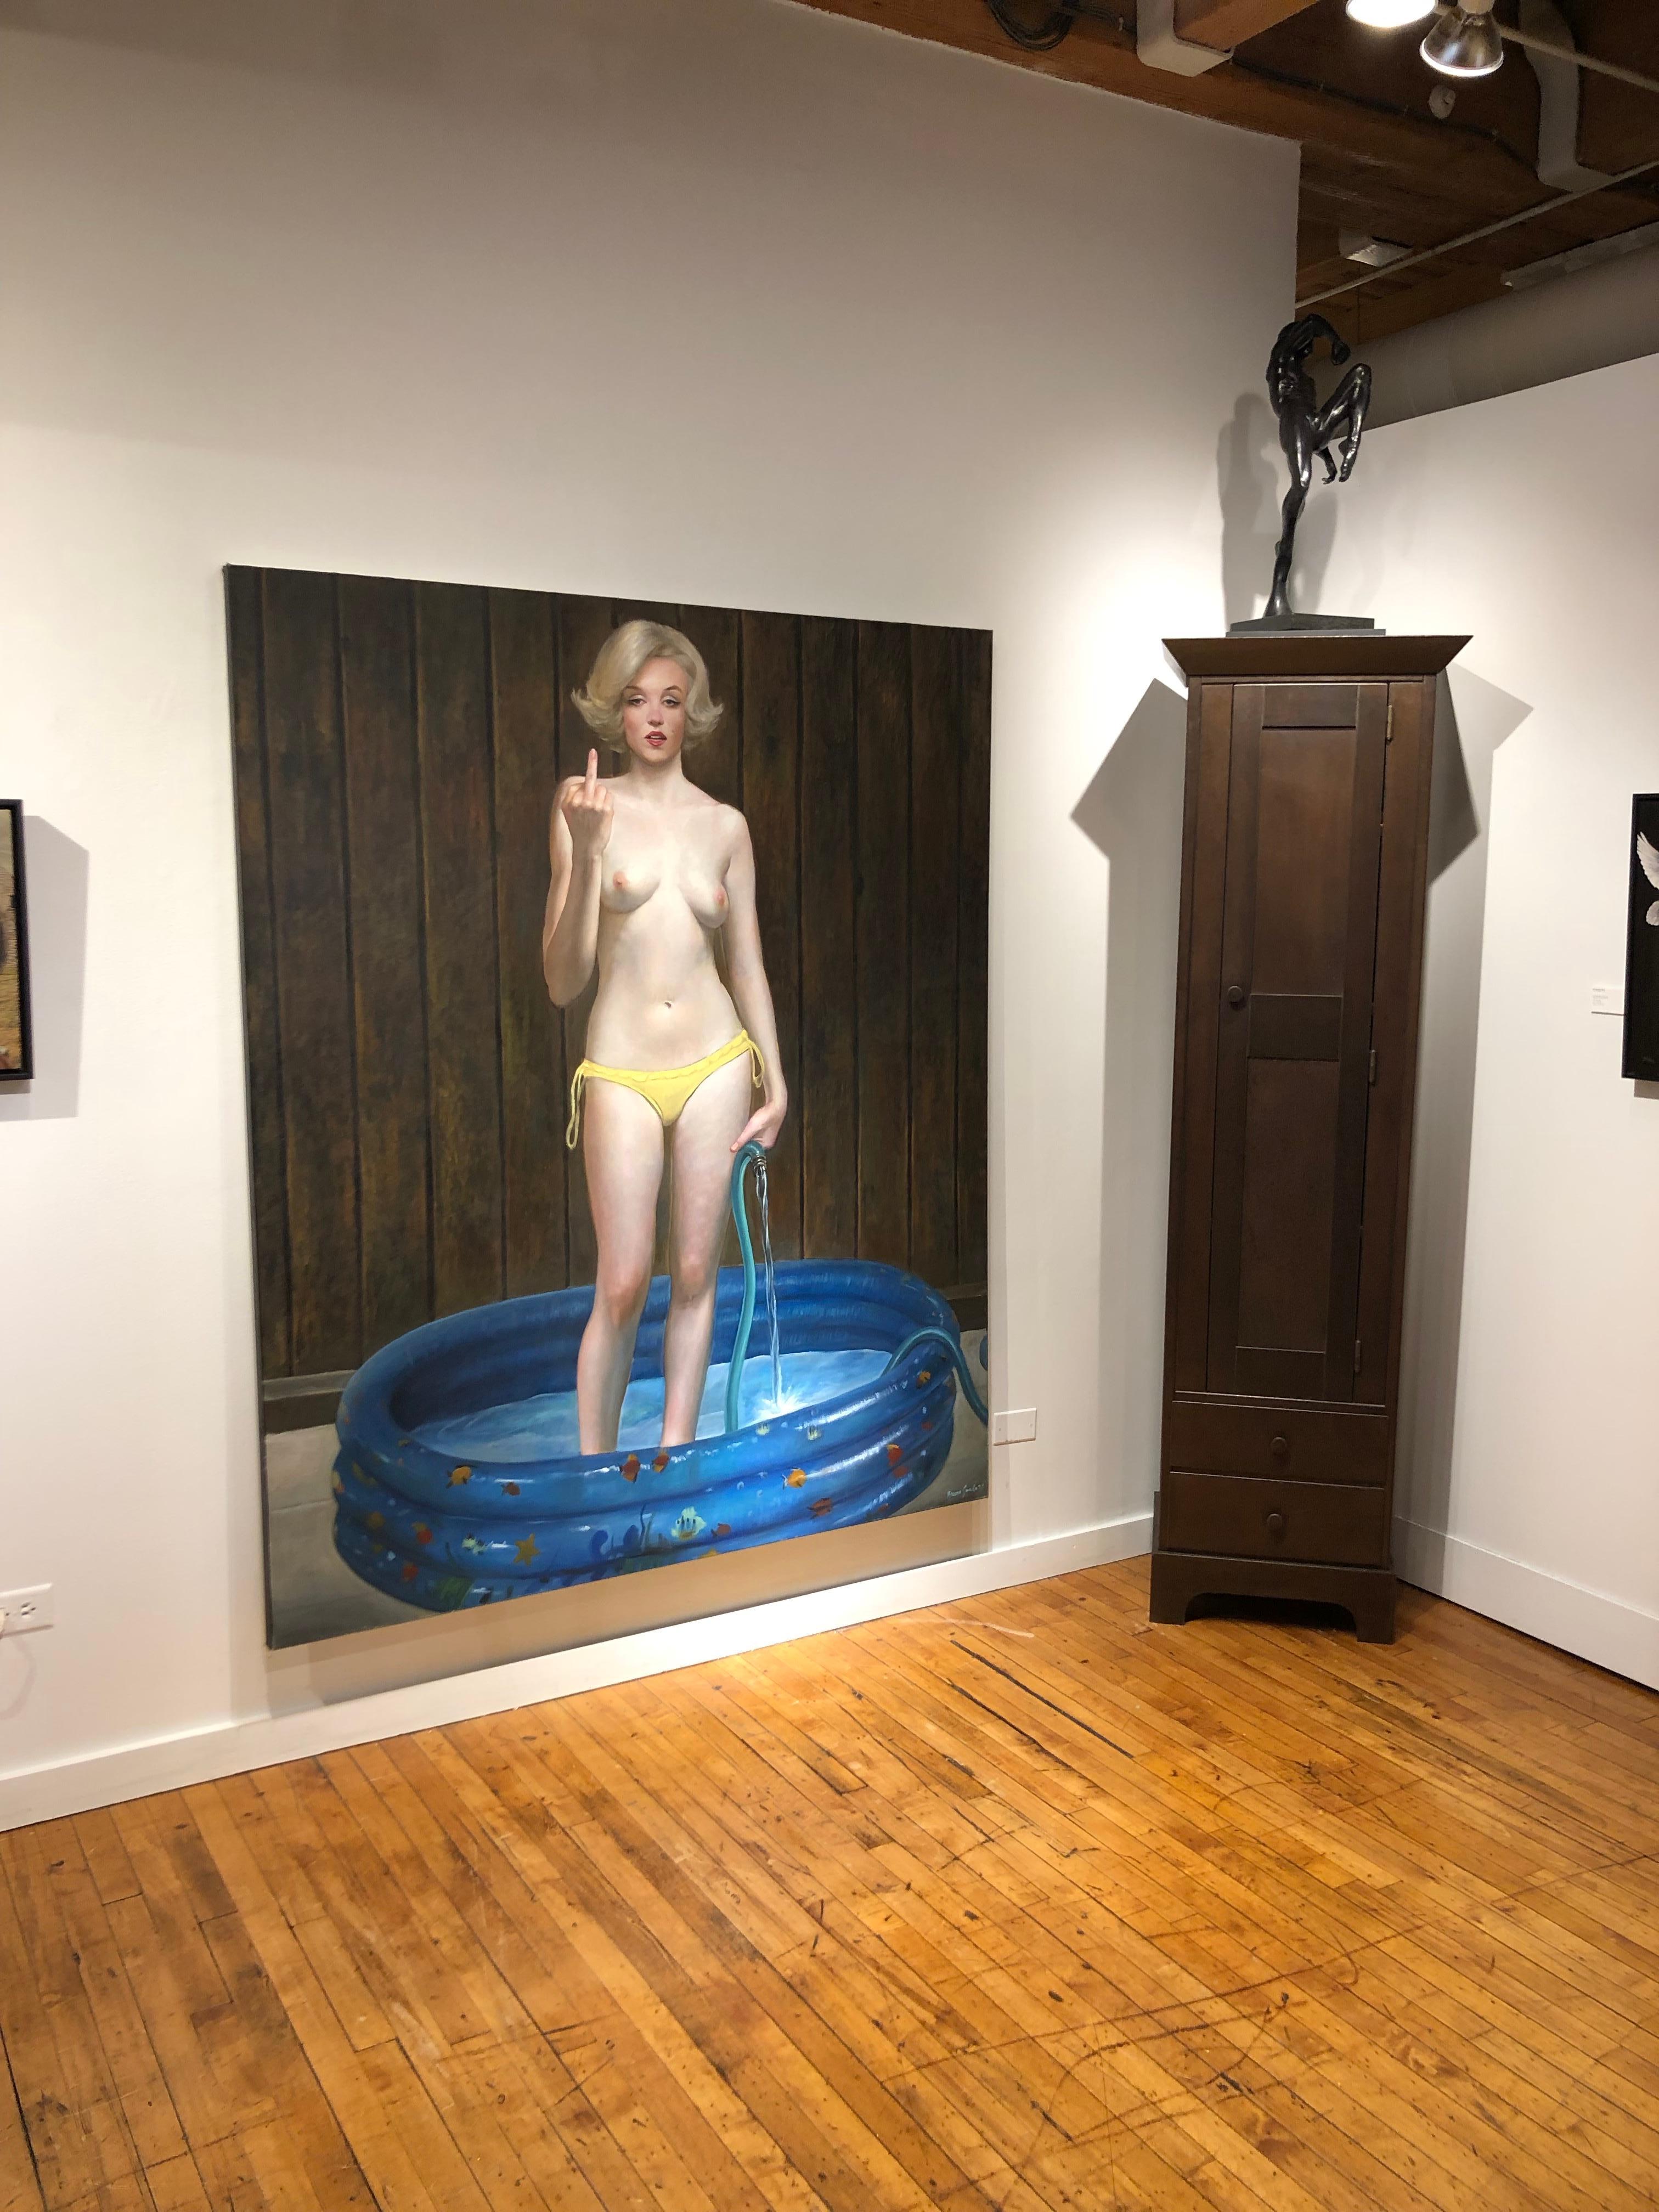 Dieses großformatige und wunderschön ausgeführte:: augenzwinkernde Gemälde von Marilyn Monroe:: die nackt in einem kleinen Pool steht:: zieht die Aufmerksamkeit des Betrachters auf sich. Letztlich beginnt die Diskussion. 

Bruno Surdo 
Raus! 
Öl auf